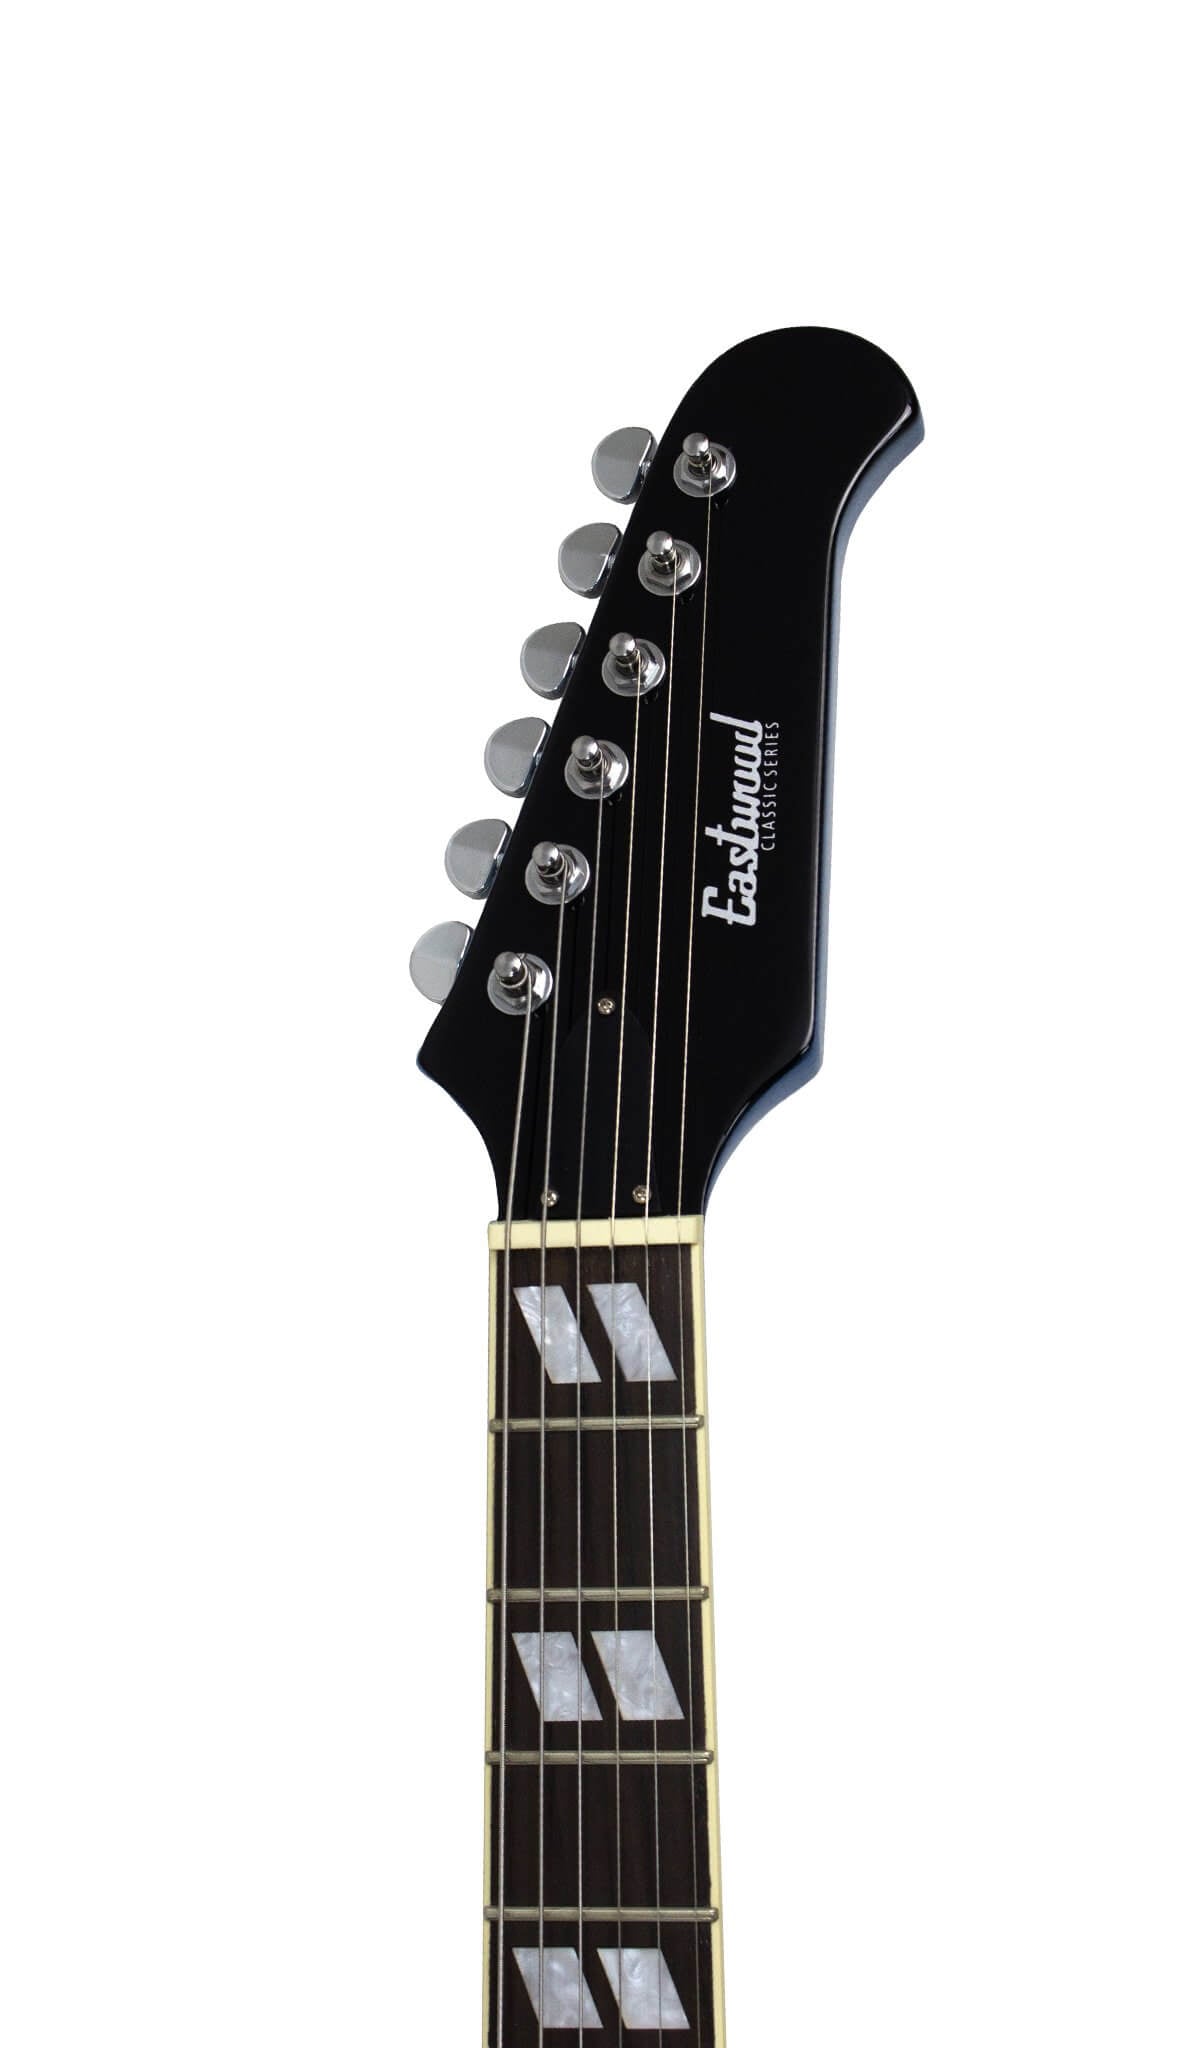 Eastwood Guitars Classic 6 HB-TL Pelham Blue #color_pelham-blue